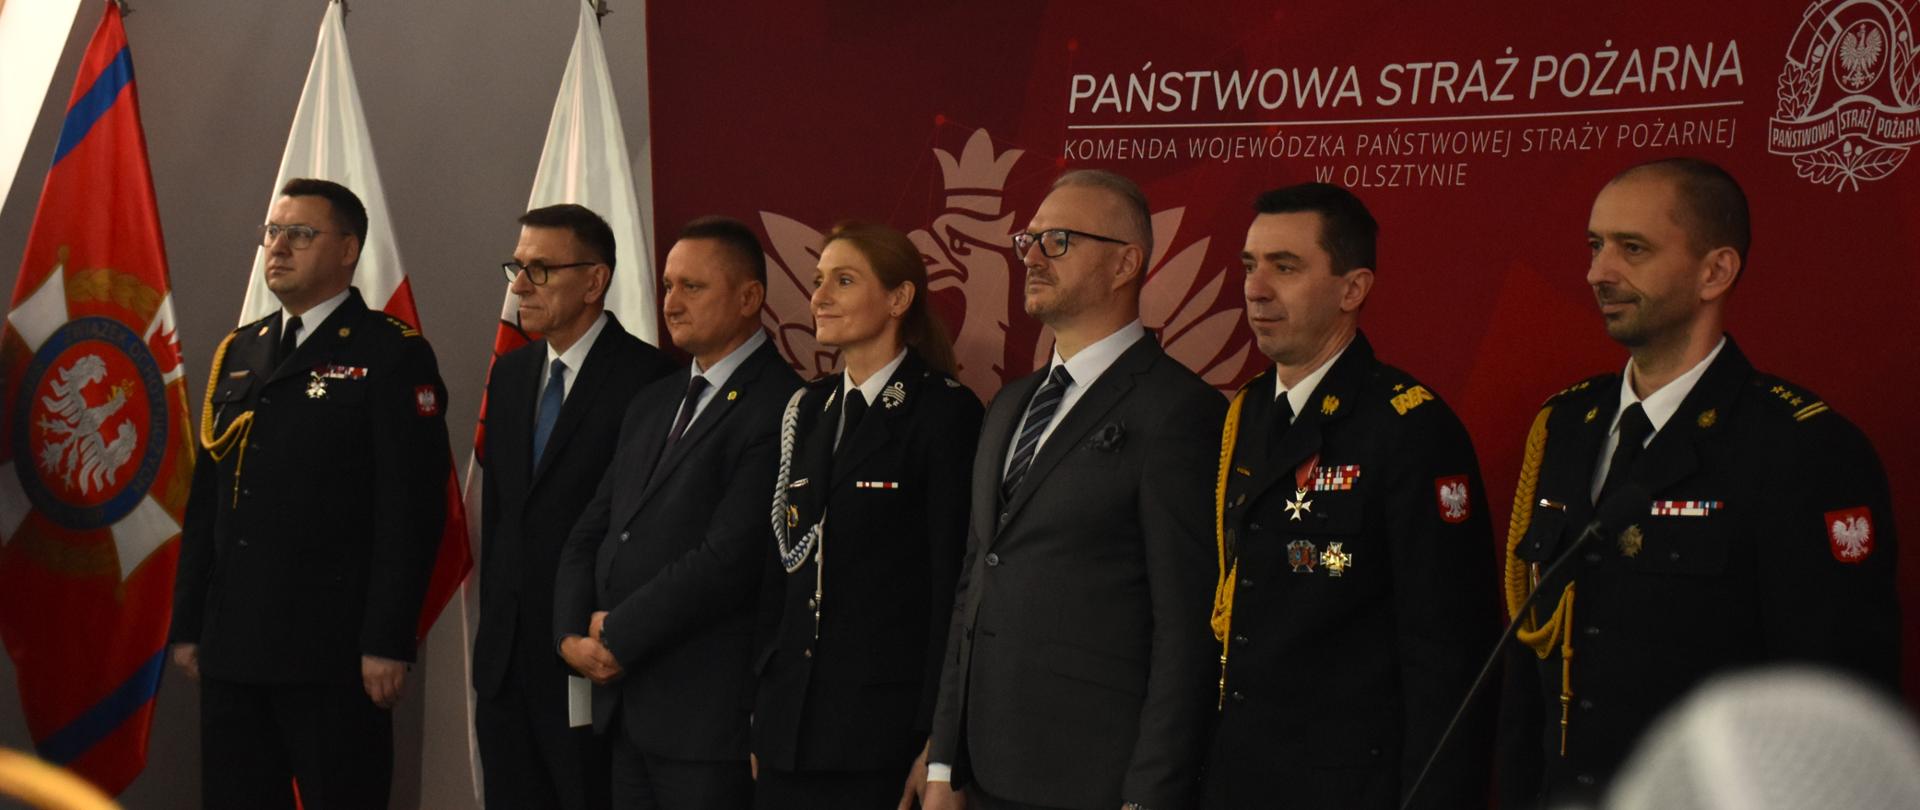 Nowy Komendant Wojewódzki Państwowej Straży Pożarnej w Olsztynie